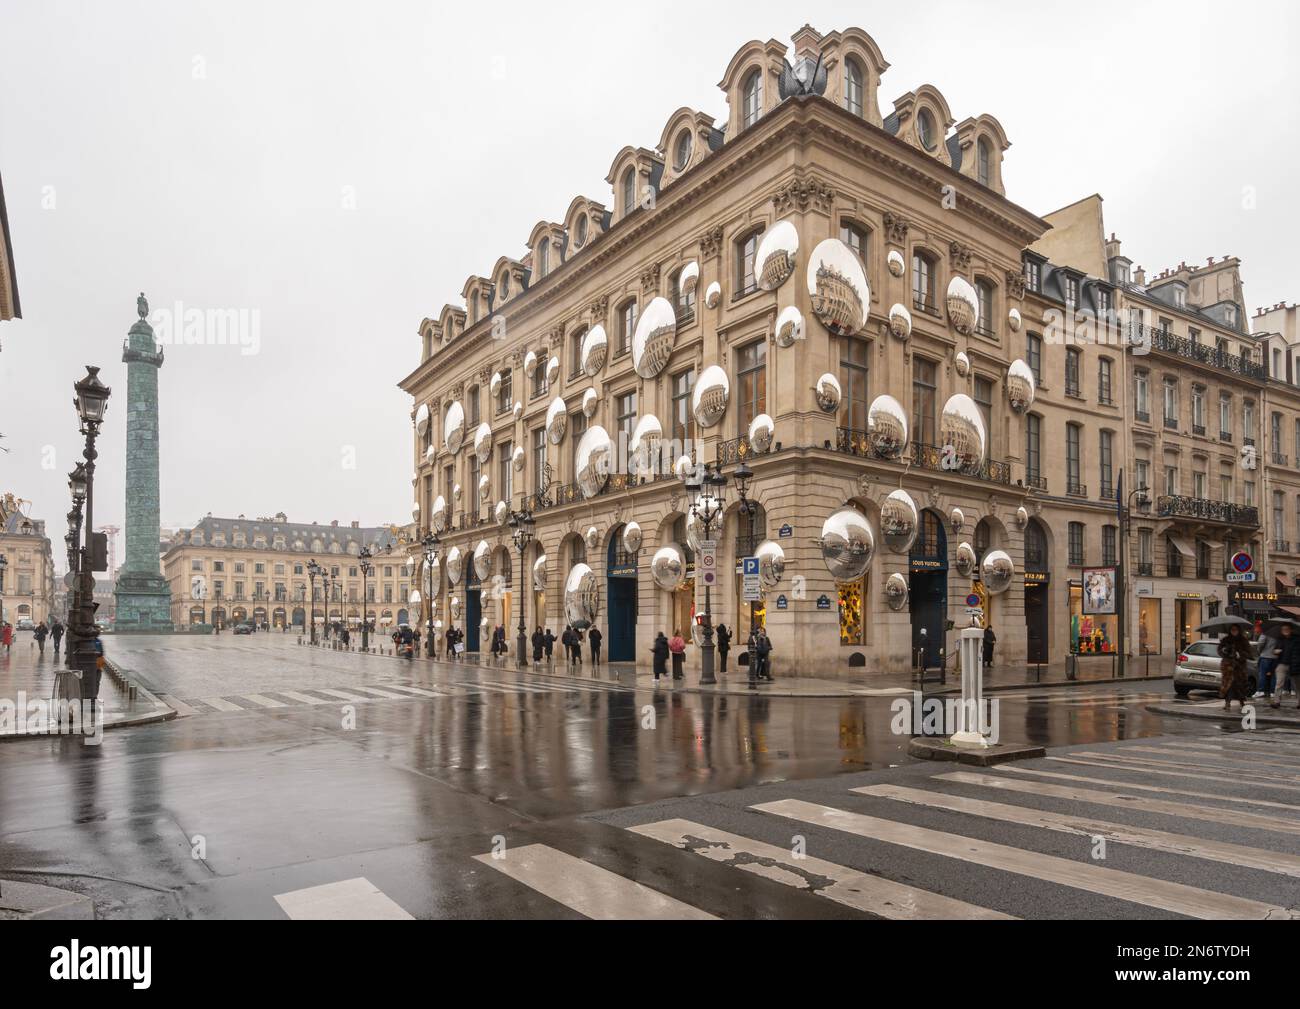 Tourists Outside Louis Vuitton Building Avenue Des Champsélysées Paris  France Stock Photo - Download Image Now - iStock